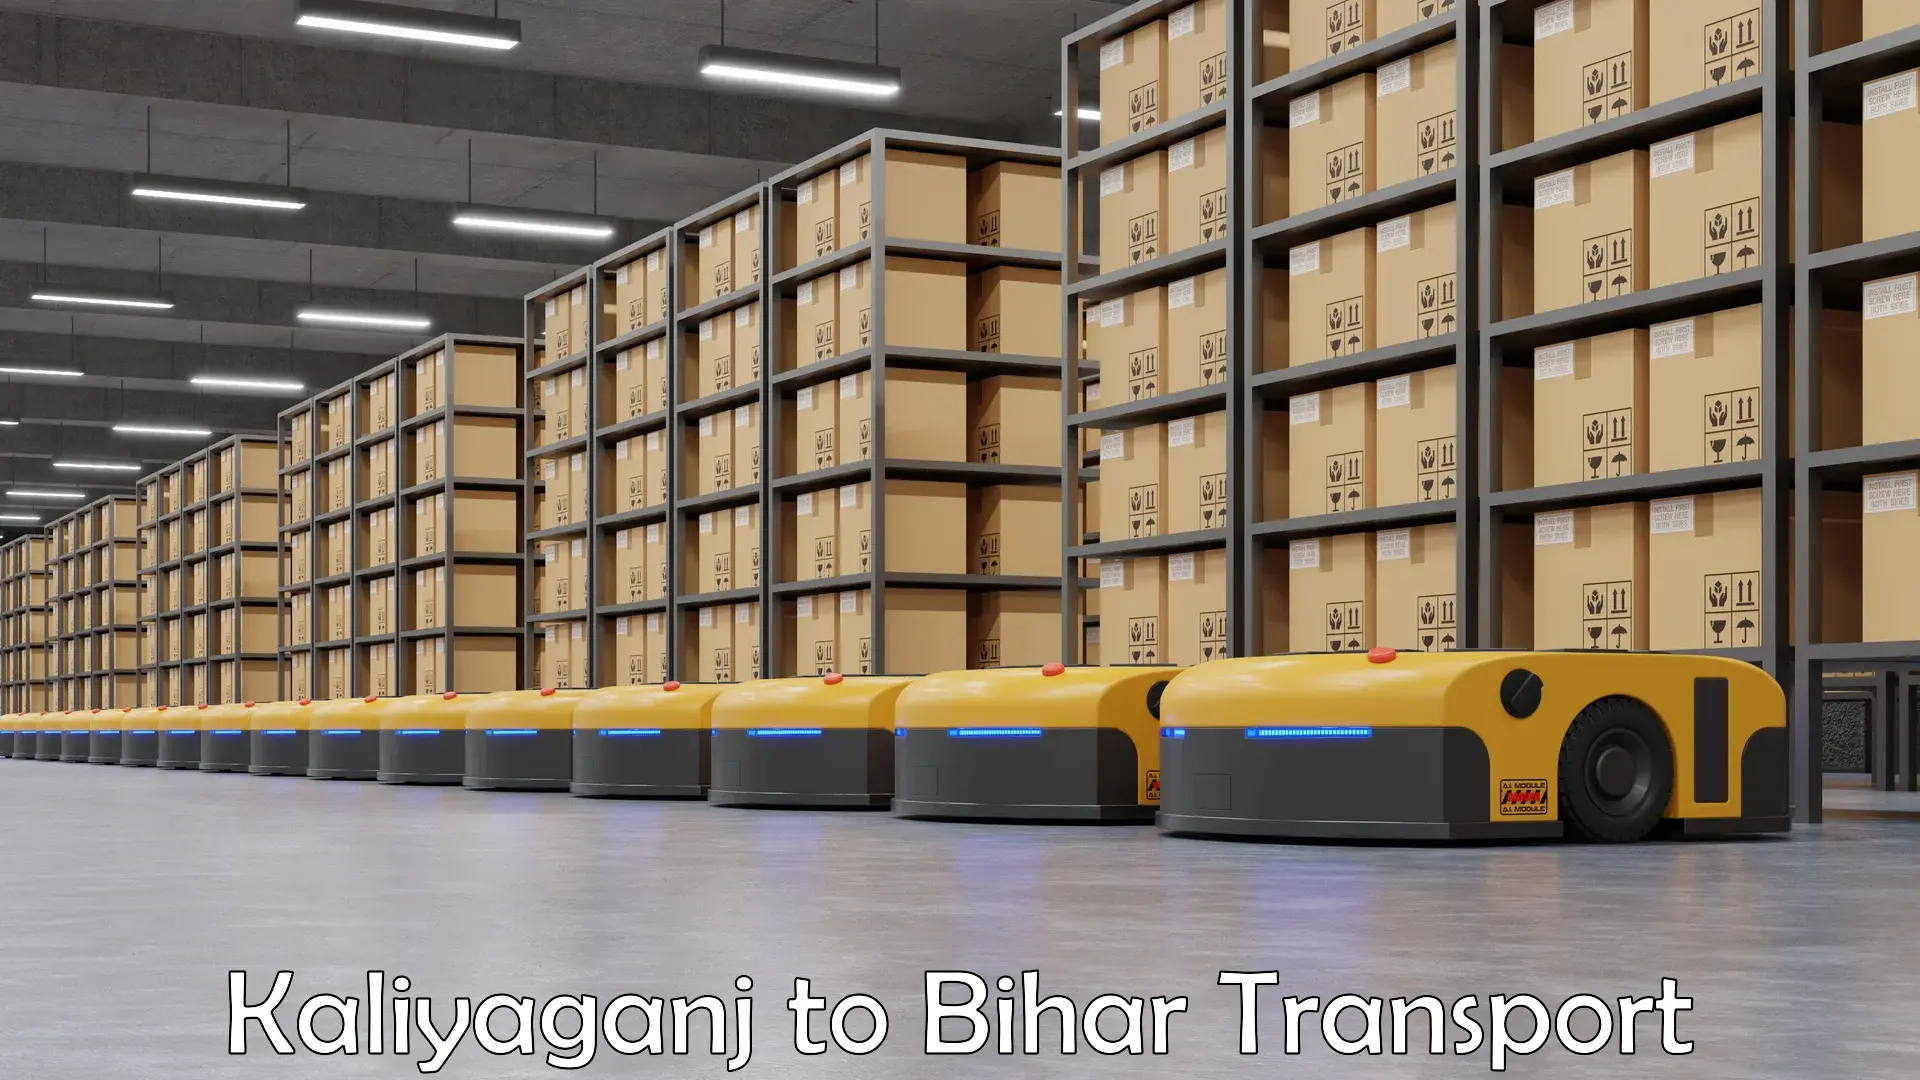 Container transport service Kaliyaganj to Hasanpura